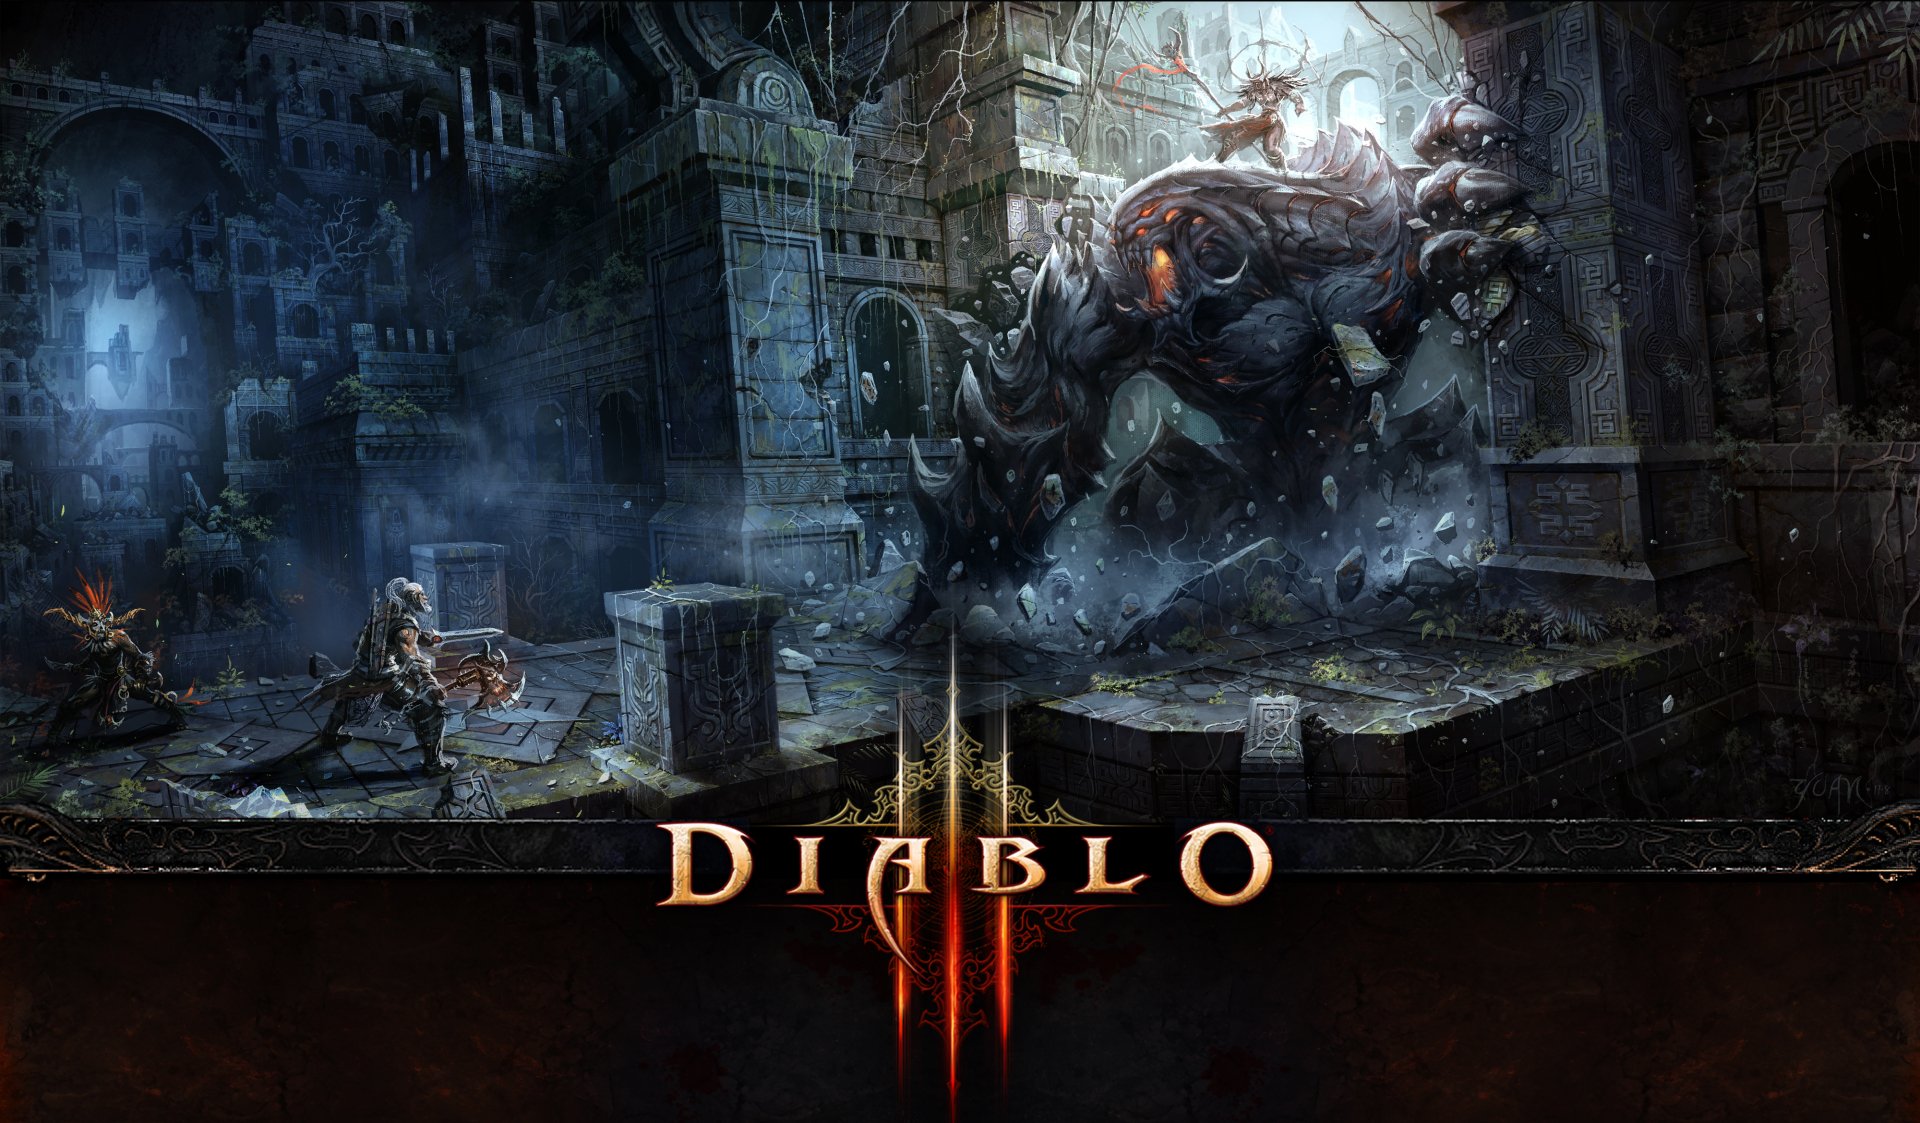 Diablo III 4k Ultra HD Wallpaper | Background Image | 4000x2339